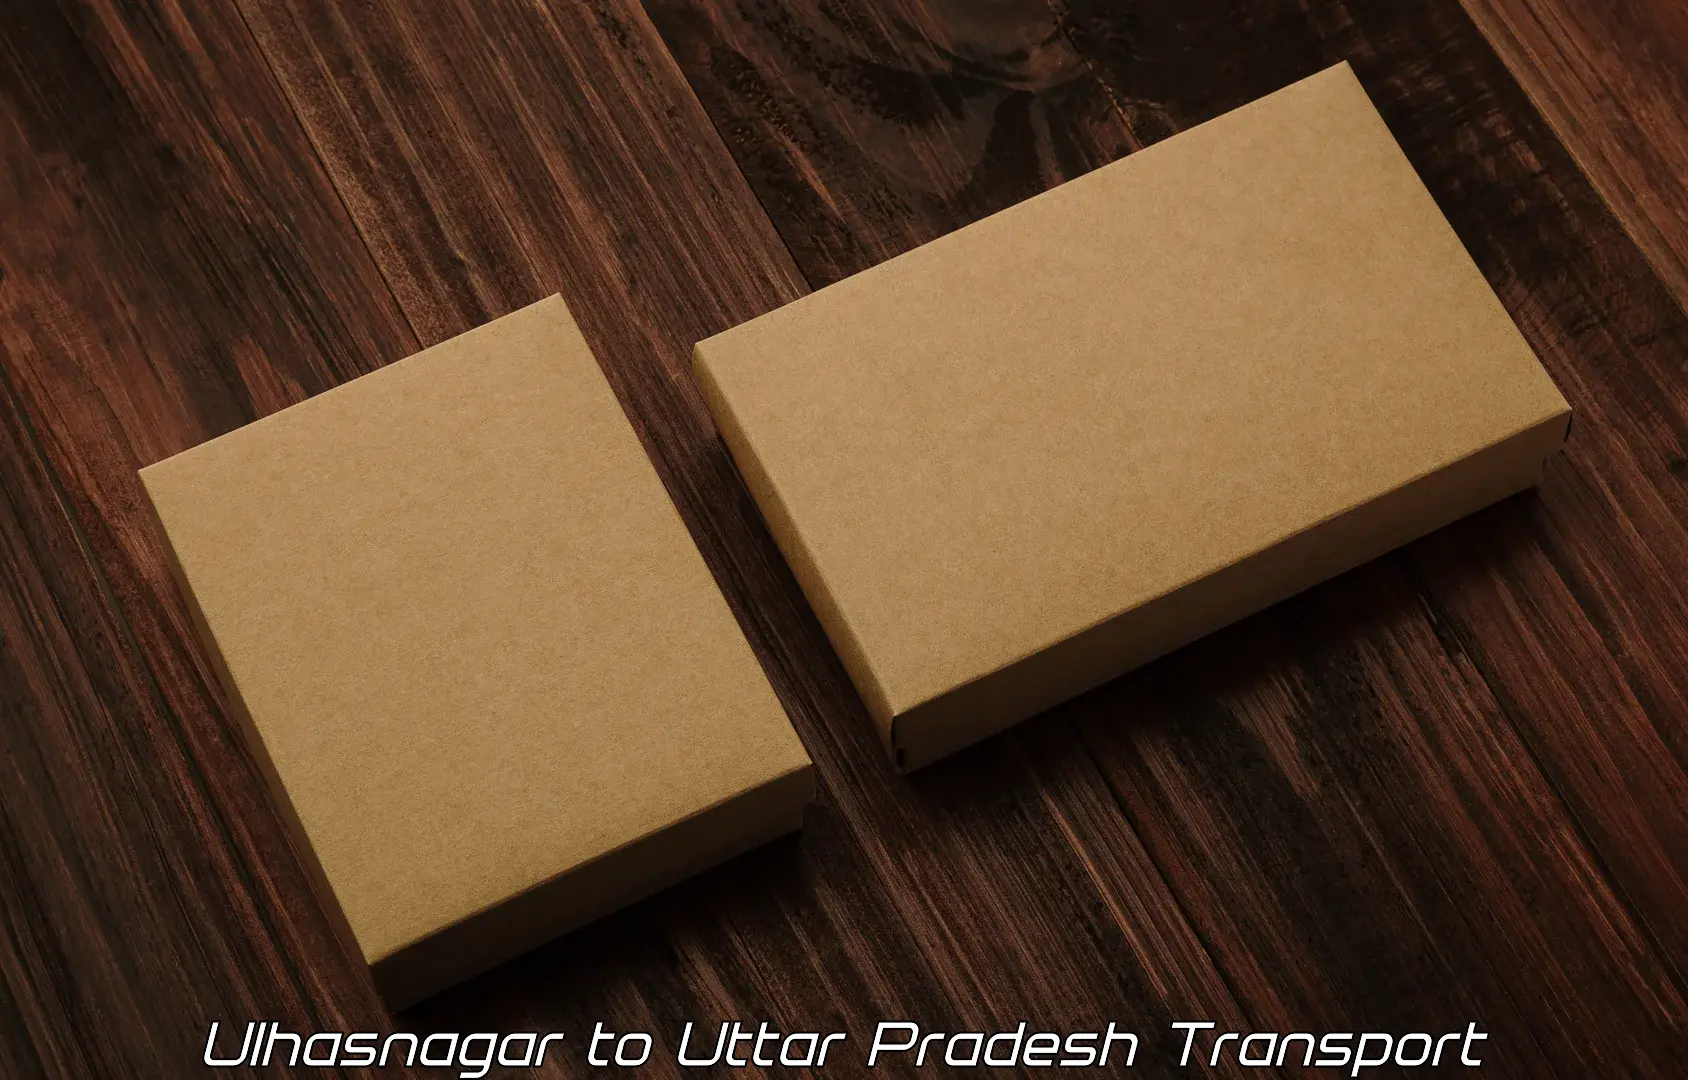 Pick up transport service Ulhasnagar to Uttar Pradesh